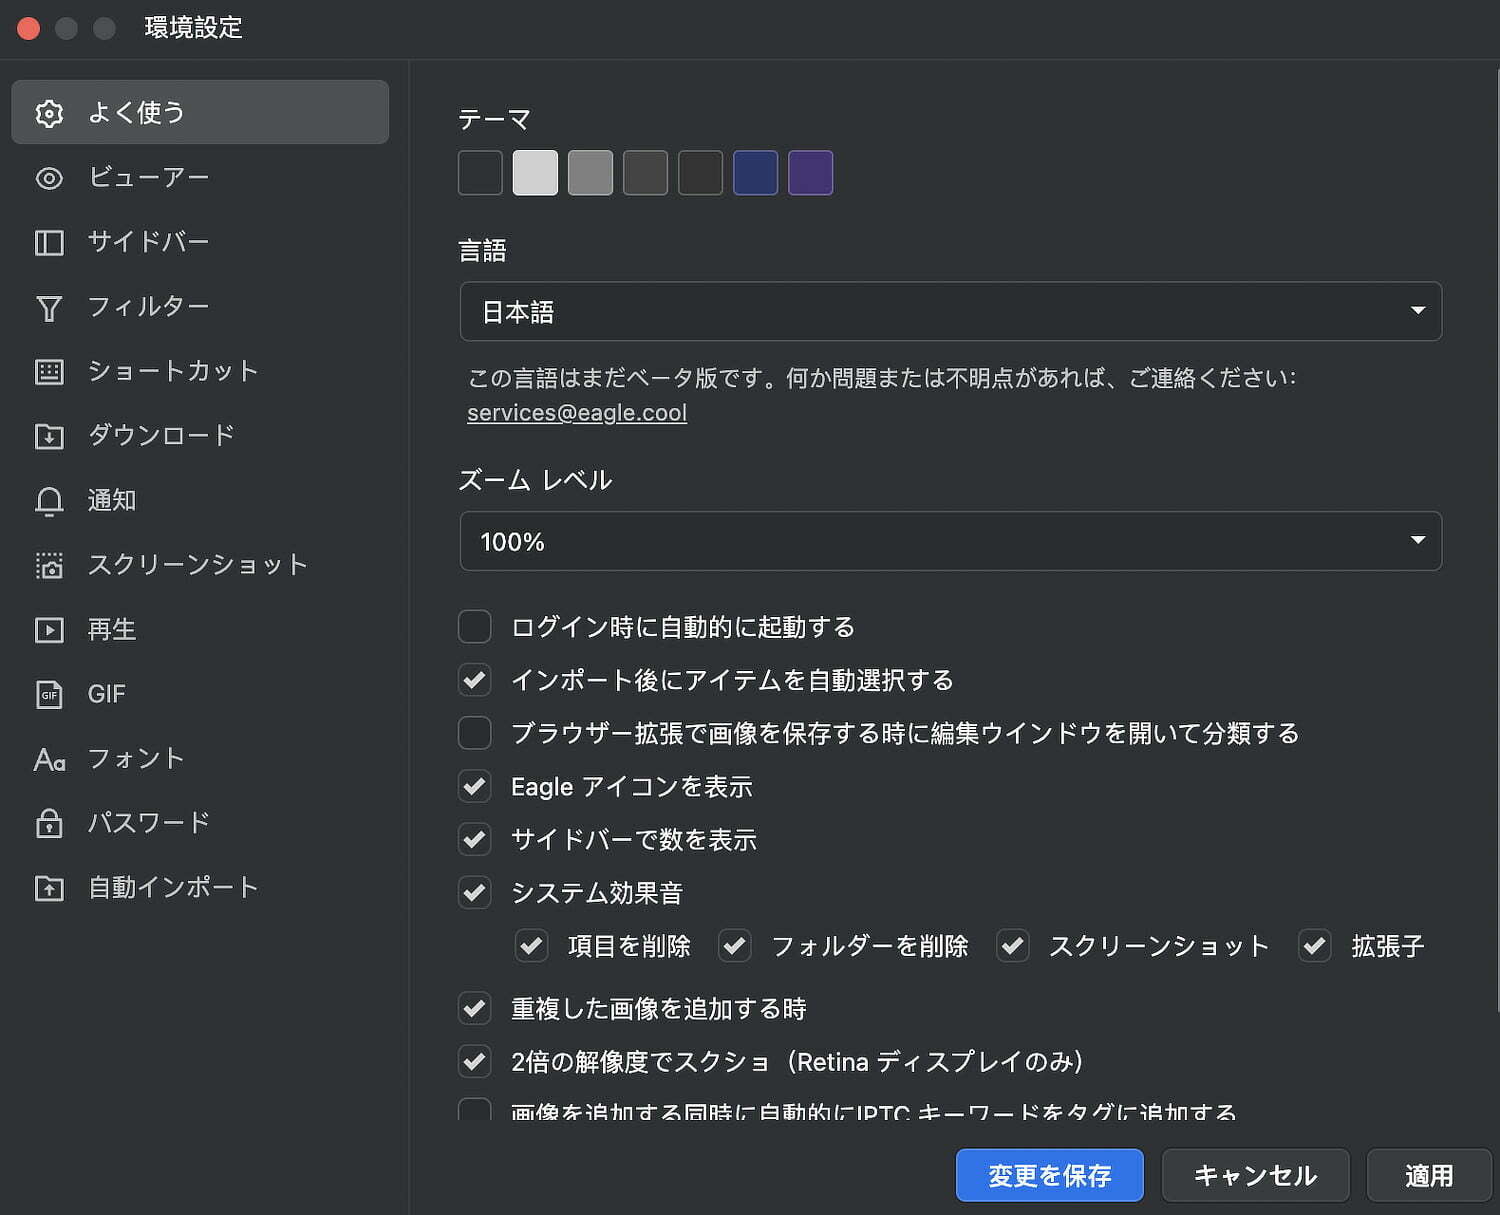 画像管理アプリ「Eagle」日本語設定画面